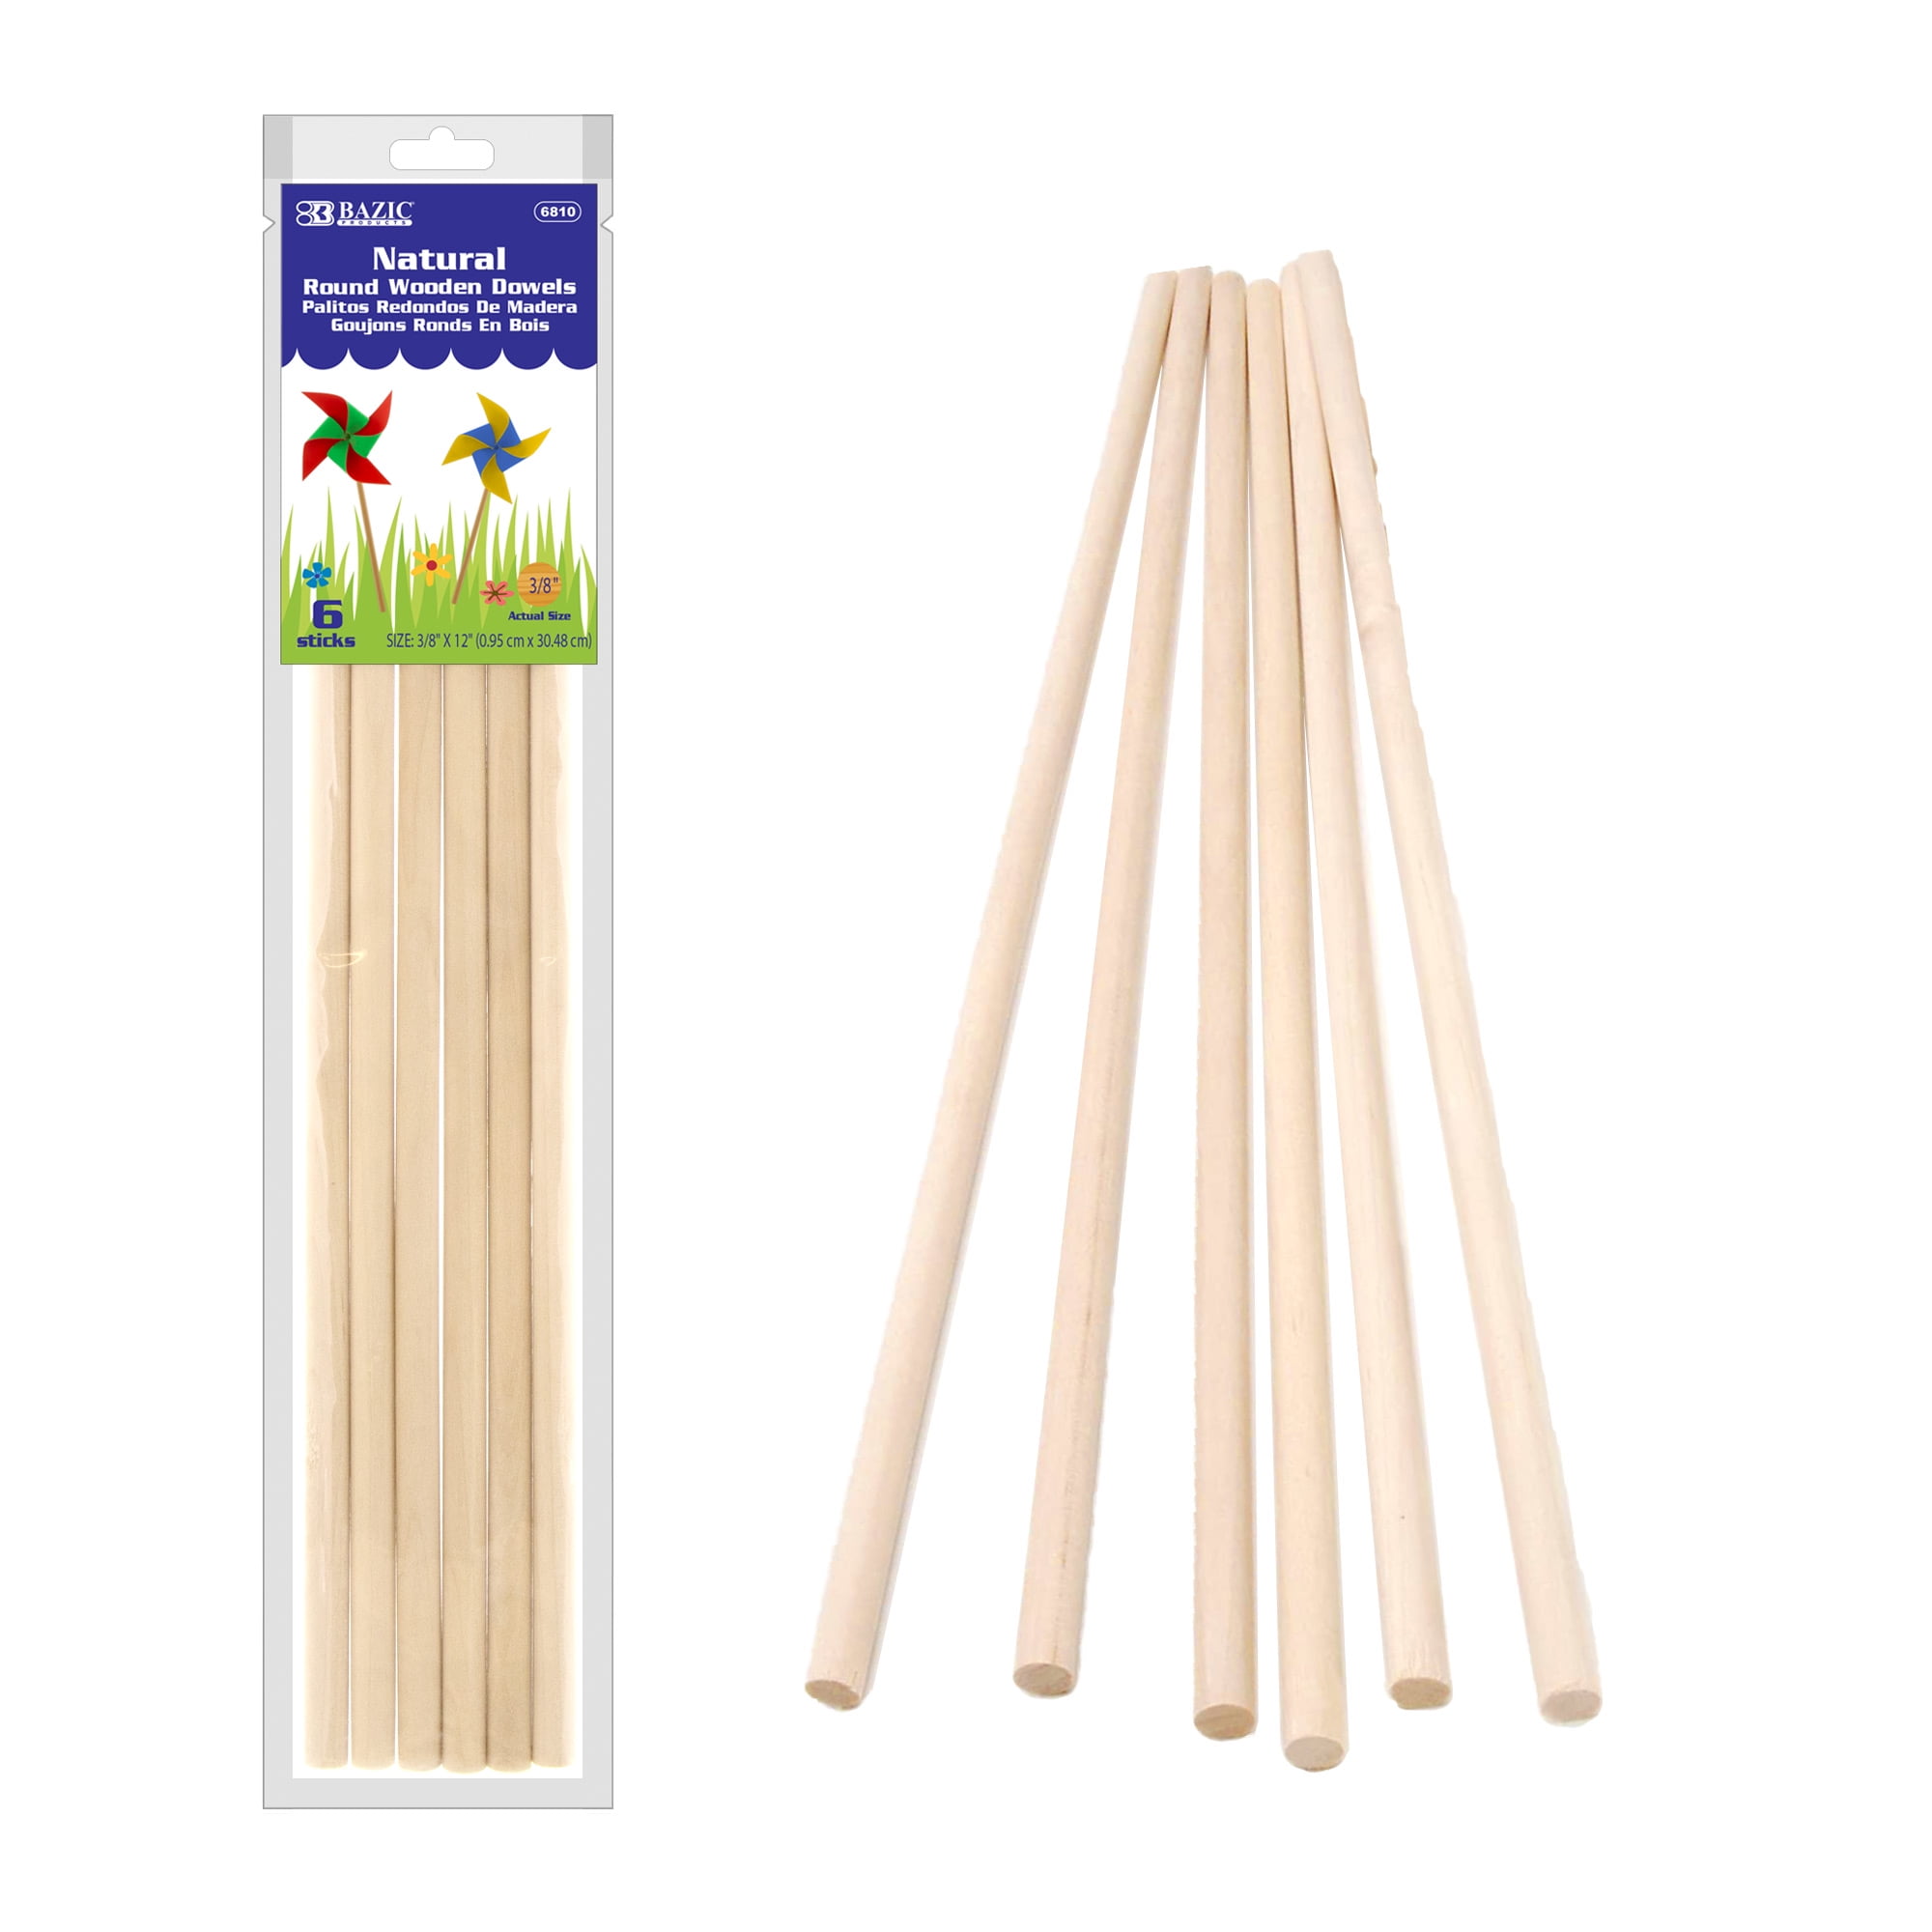 Round Wooden Sticks, Wooden Dowel Sticks